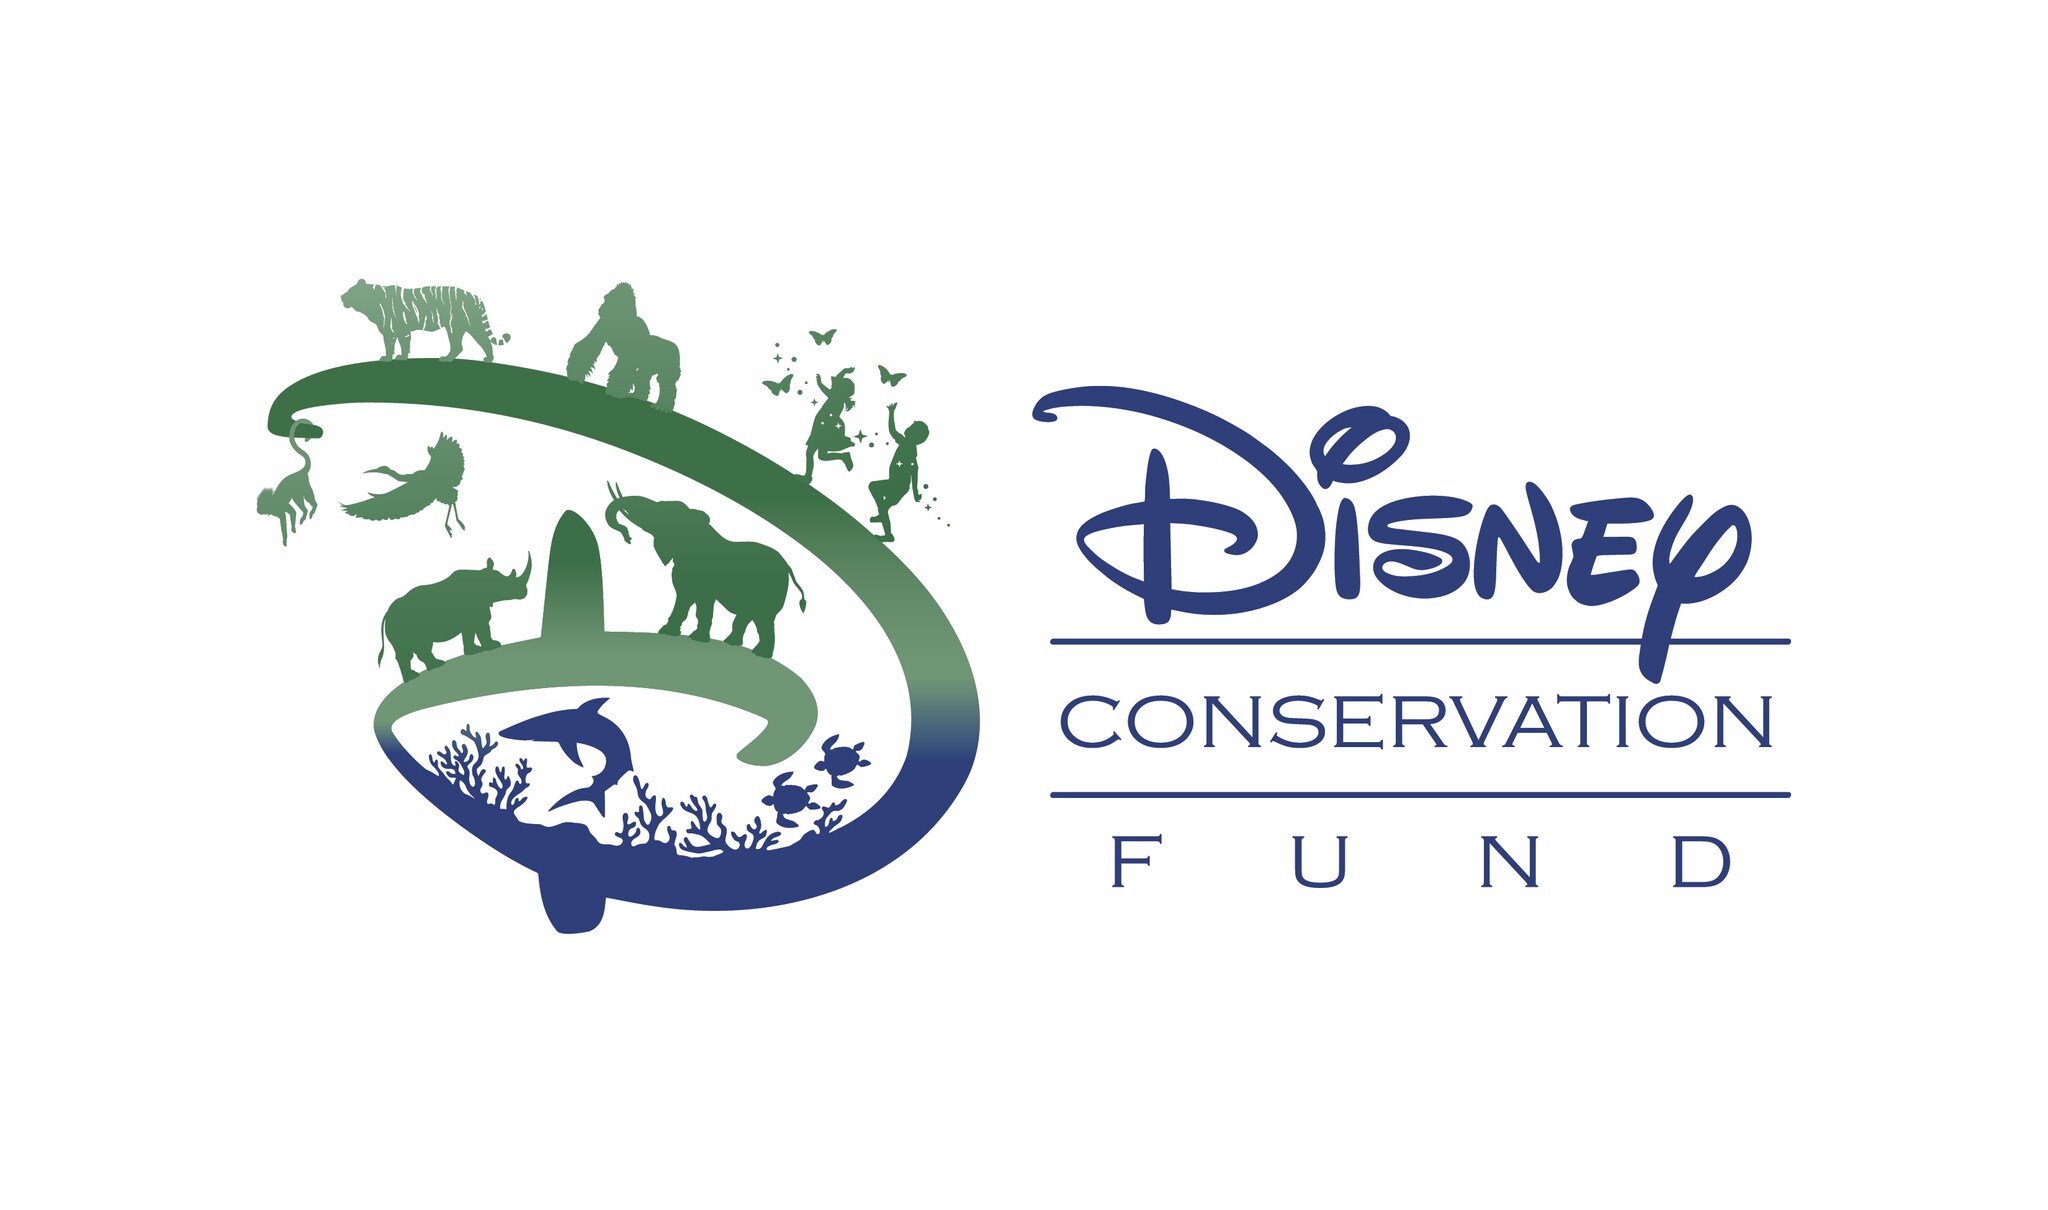 Disney Conservation Fund